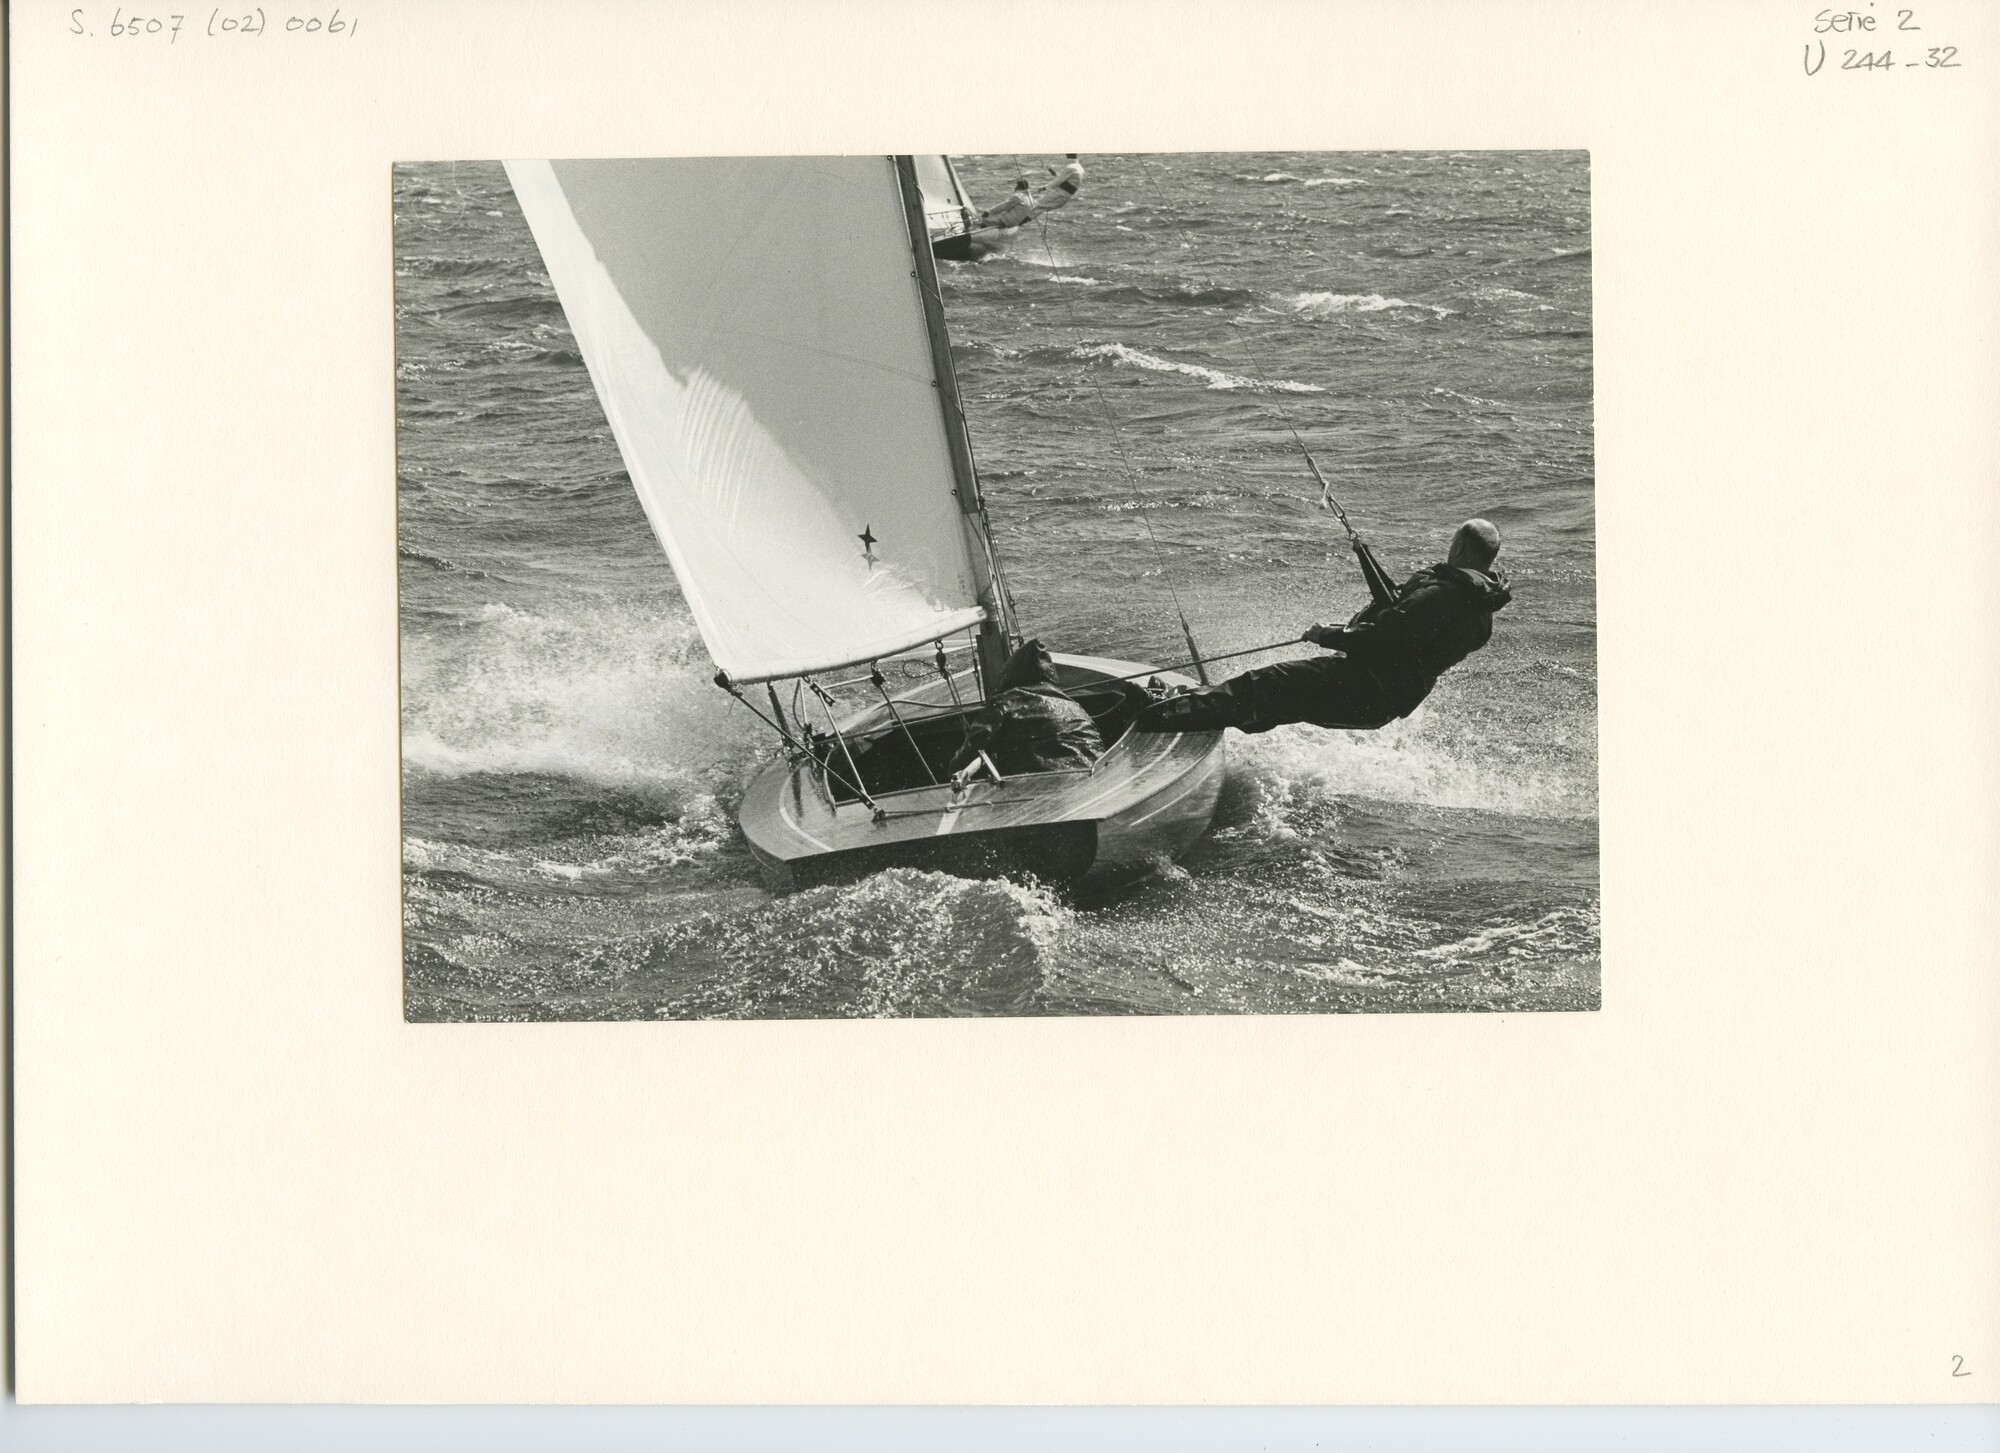 S.6507(02)0061.04; Zwart-wit foto van 16m² klasse nummer 3044 (Nico, Vossenberg) in actie tijdens de Voor-Braassem 1967; foto